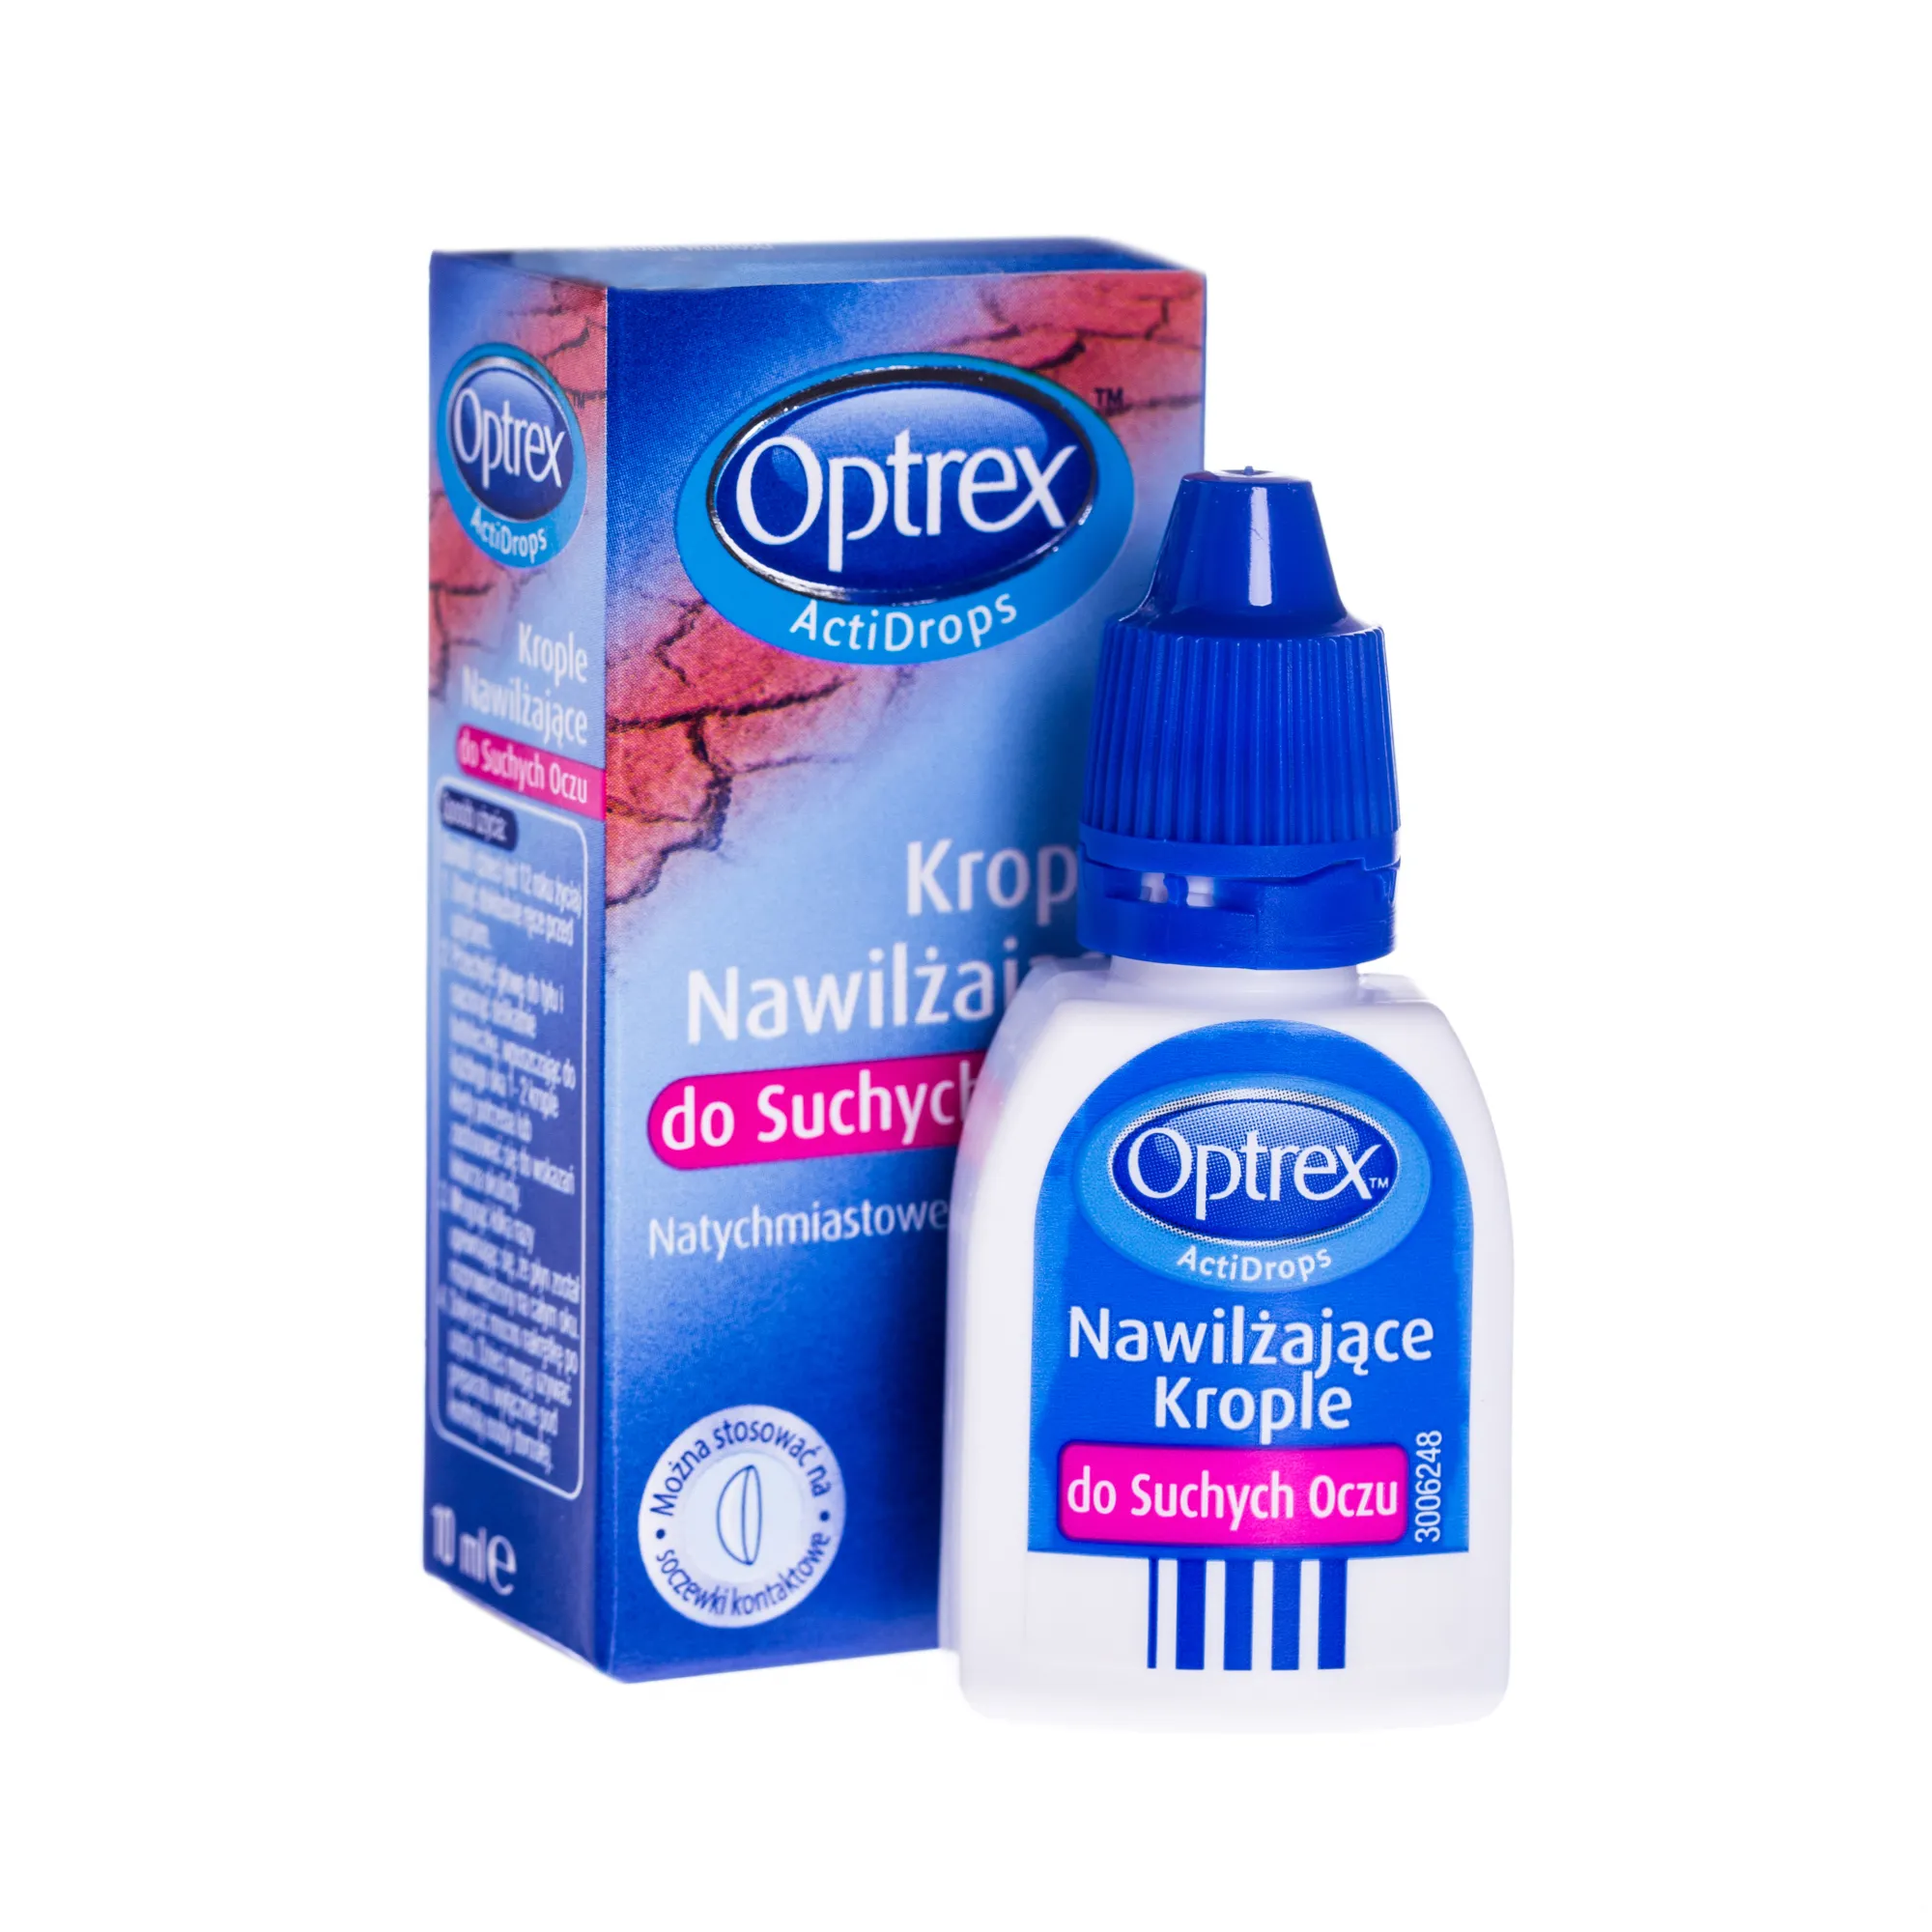 Optrex Actidrops, krople nawilżające do suchych oczu, 10 ml